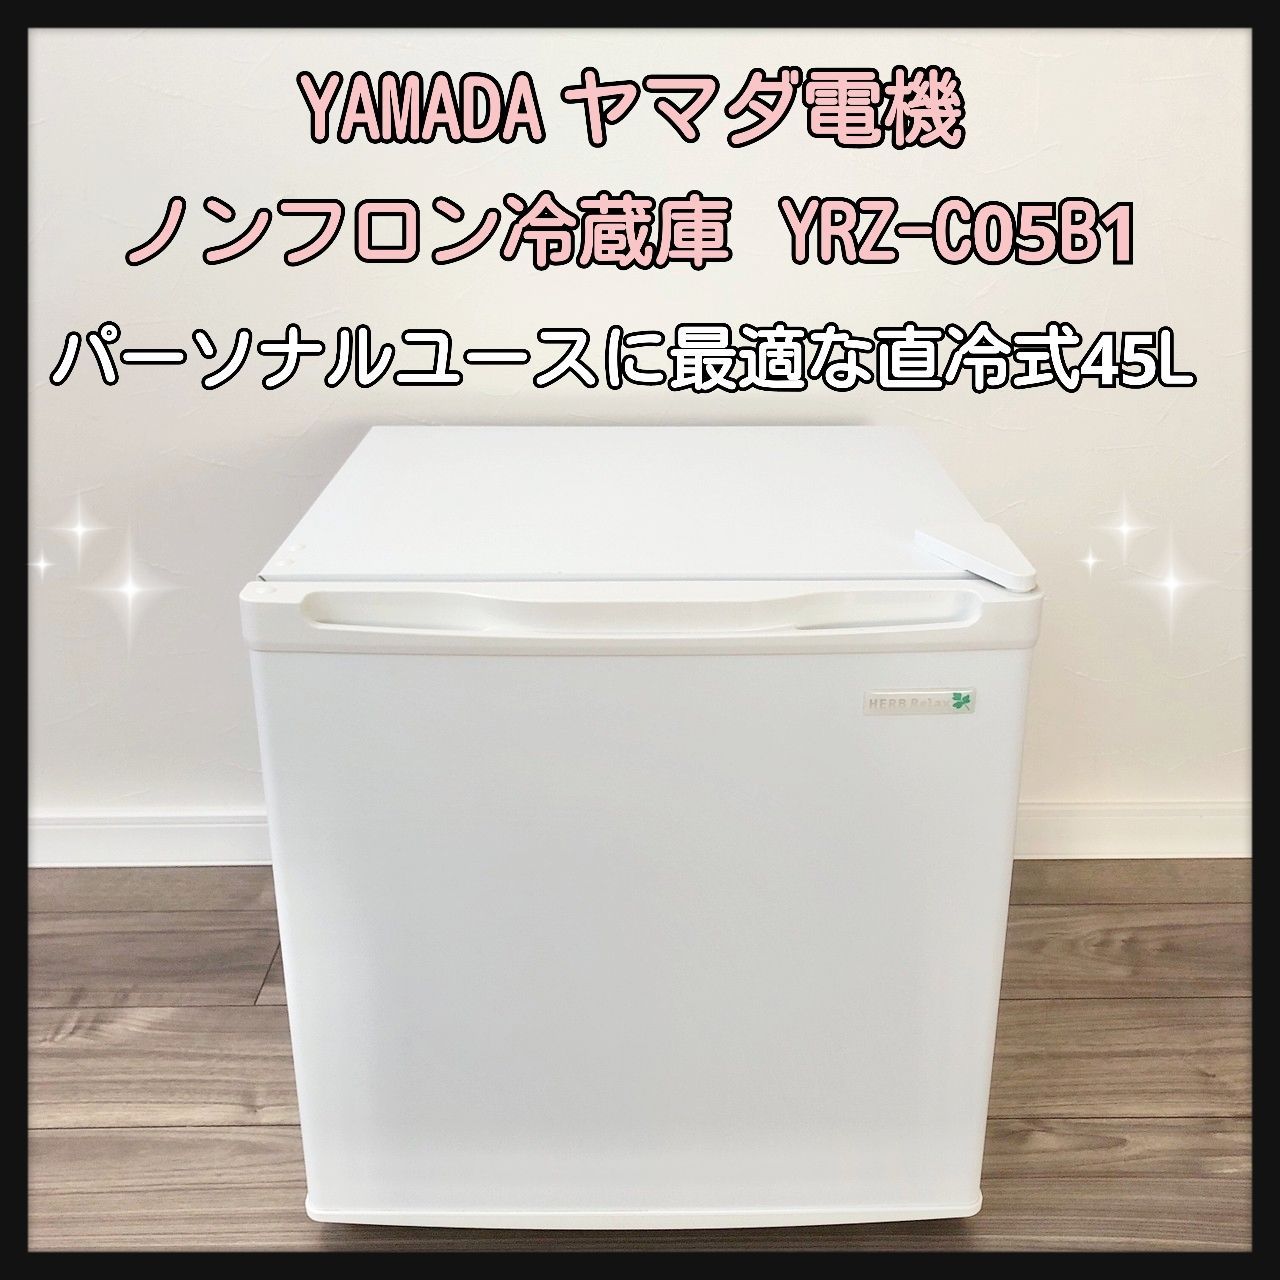 ハーブリラックス 1ドア 冷蔵庫 45L 2017年製 YRZ-C05B1 ヤマダ電機 